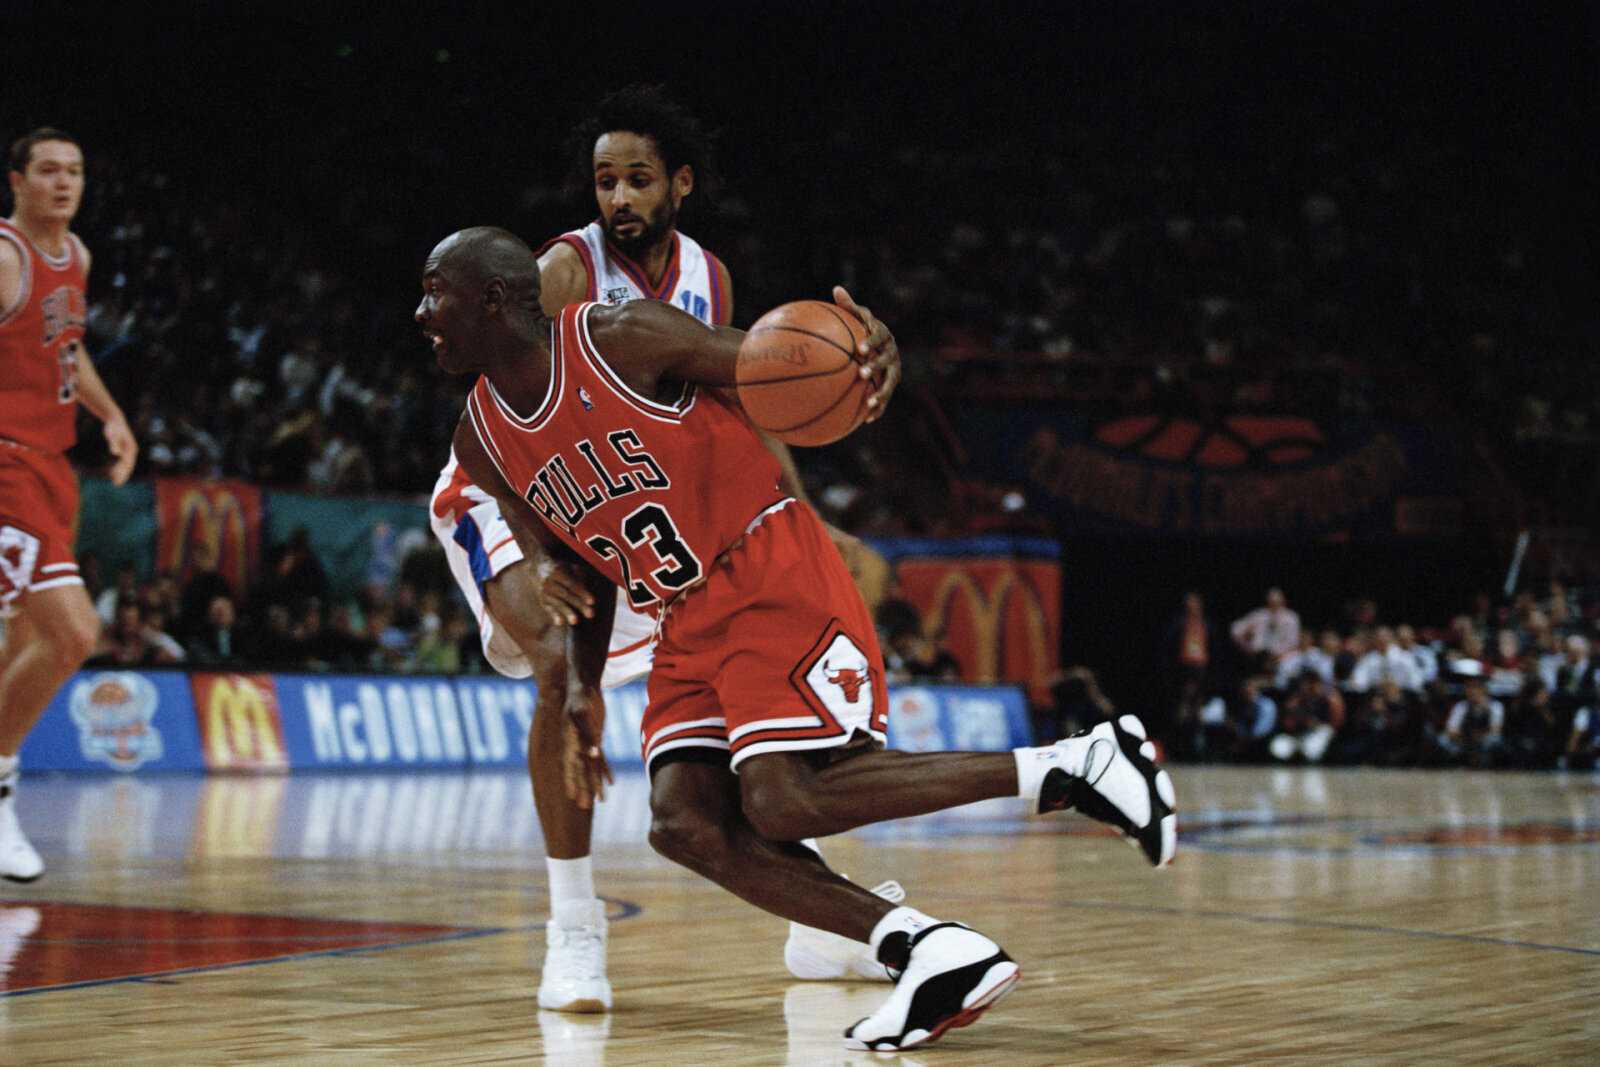 Pourquoi Michael Jordan a-t-il porté le maillot n°45 des Chicago Bulls Pourquoi Michael Jordan a-t-il porté le maillot n°45 des Chicago Bulls lors de sa première retraite ?  Sa première retraite ?